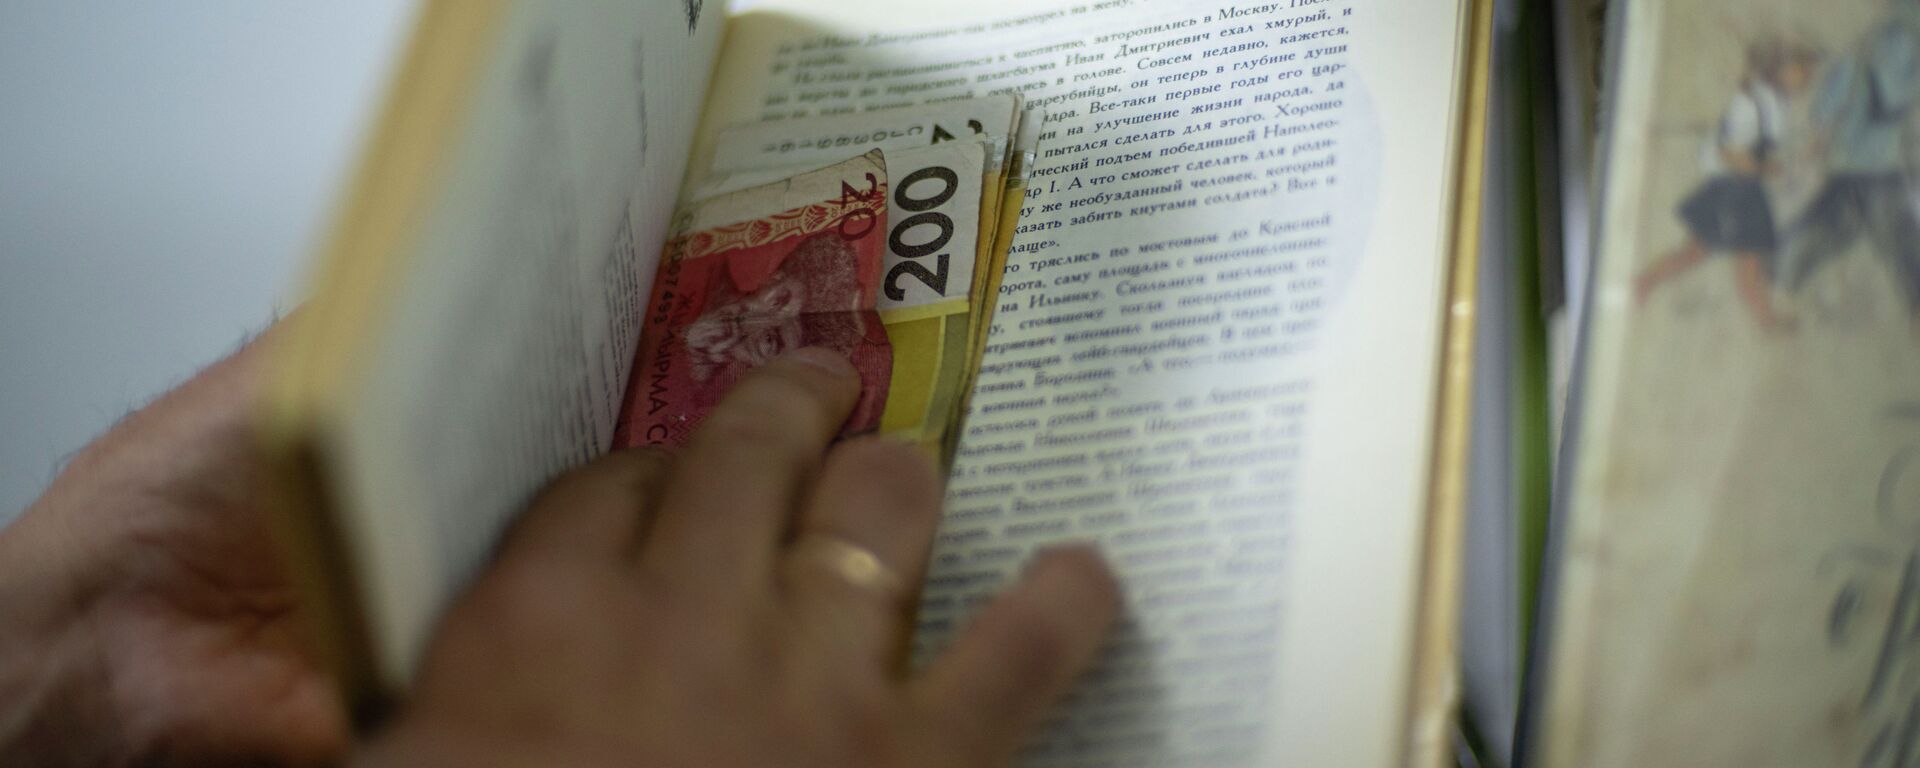 Мужчина прячет деньги в книге. Иллюстративное фото - Sputnik Кыргызстан, 1920, 06.06.2022